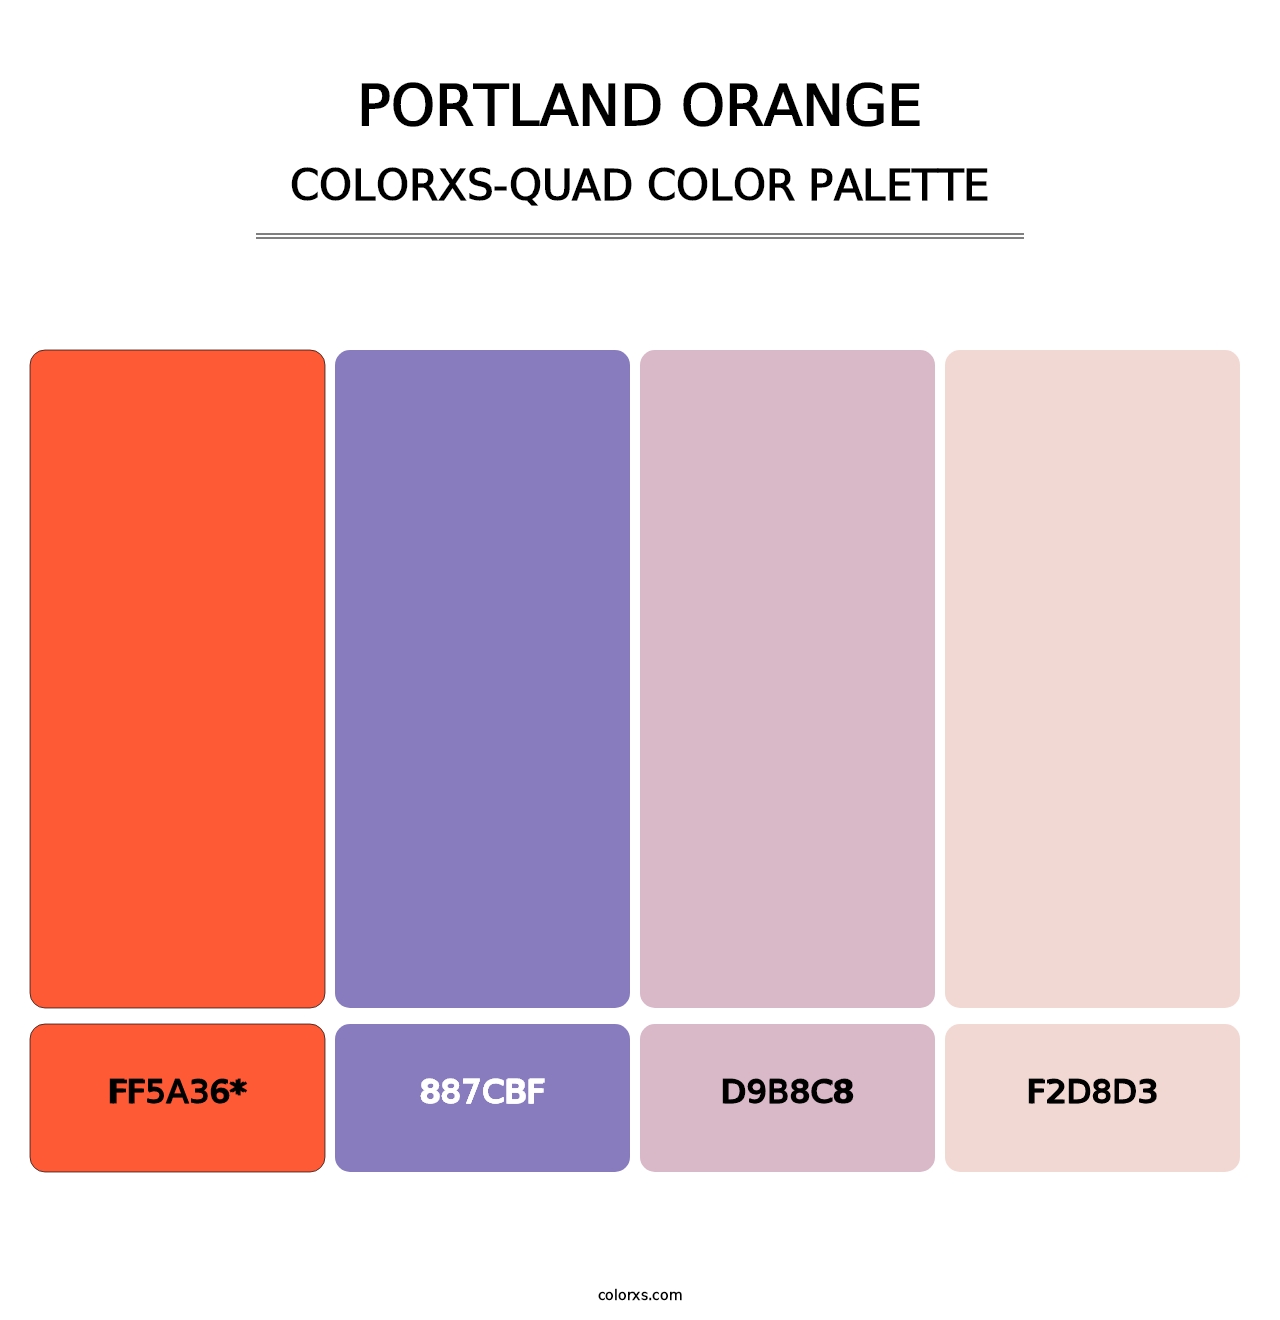 Portland Orange - Colorxs Quad Palette